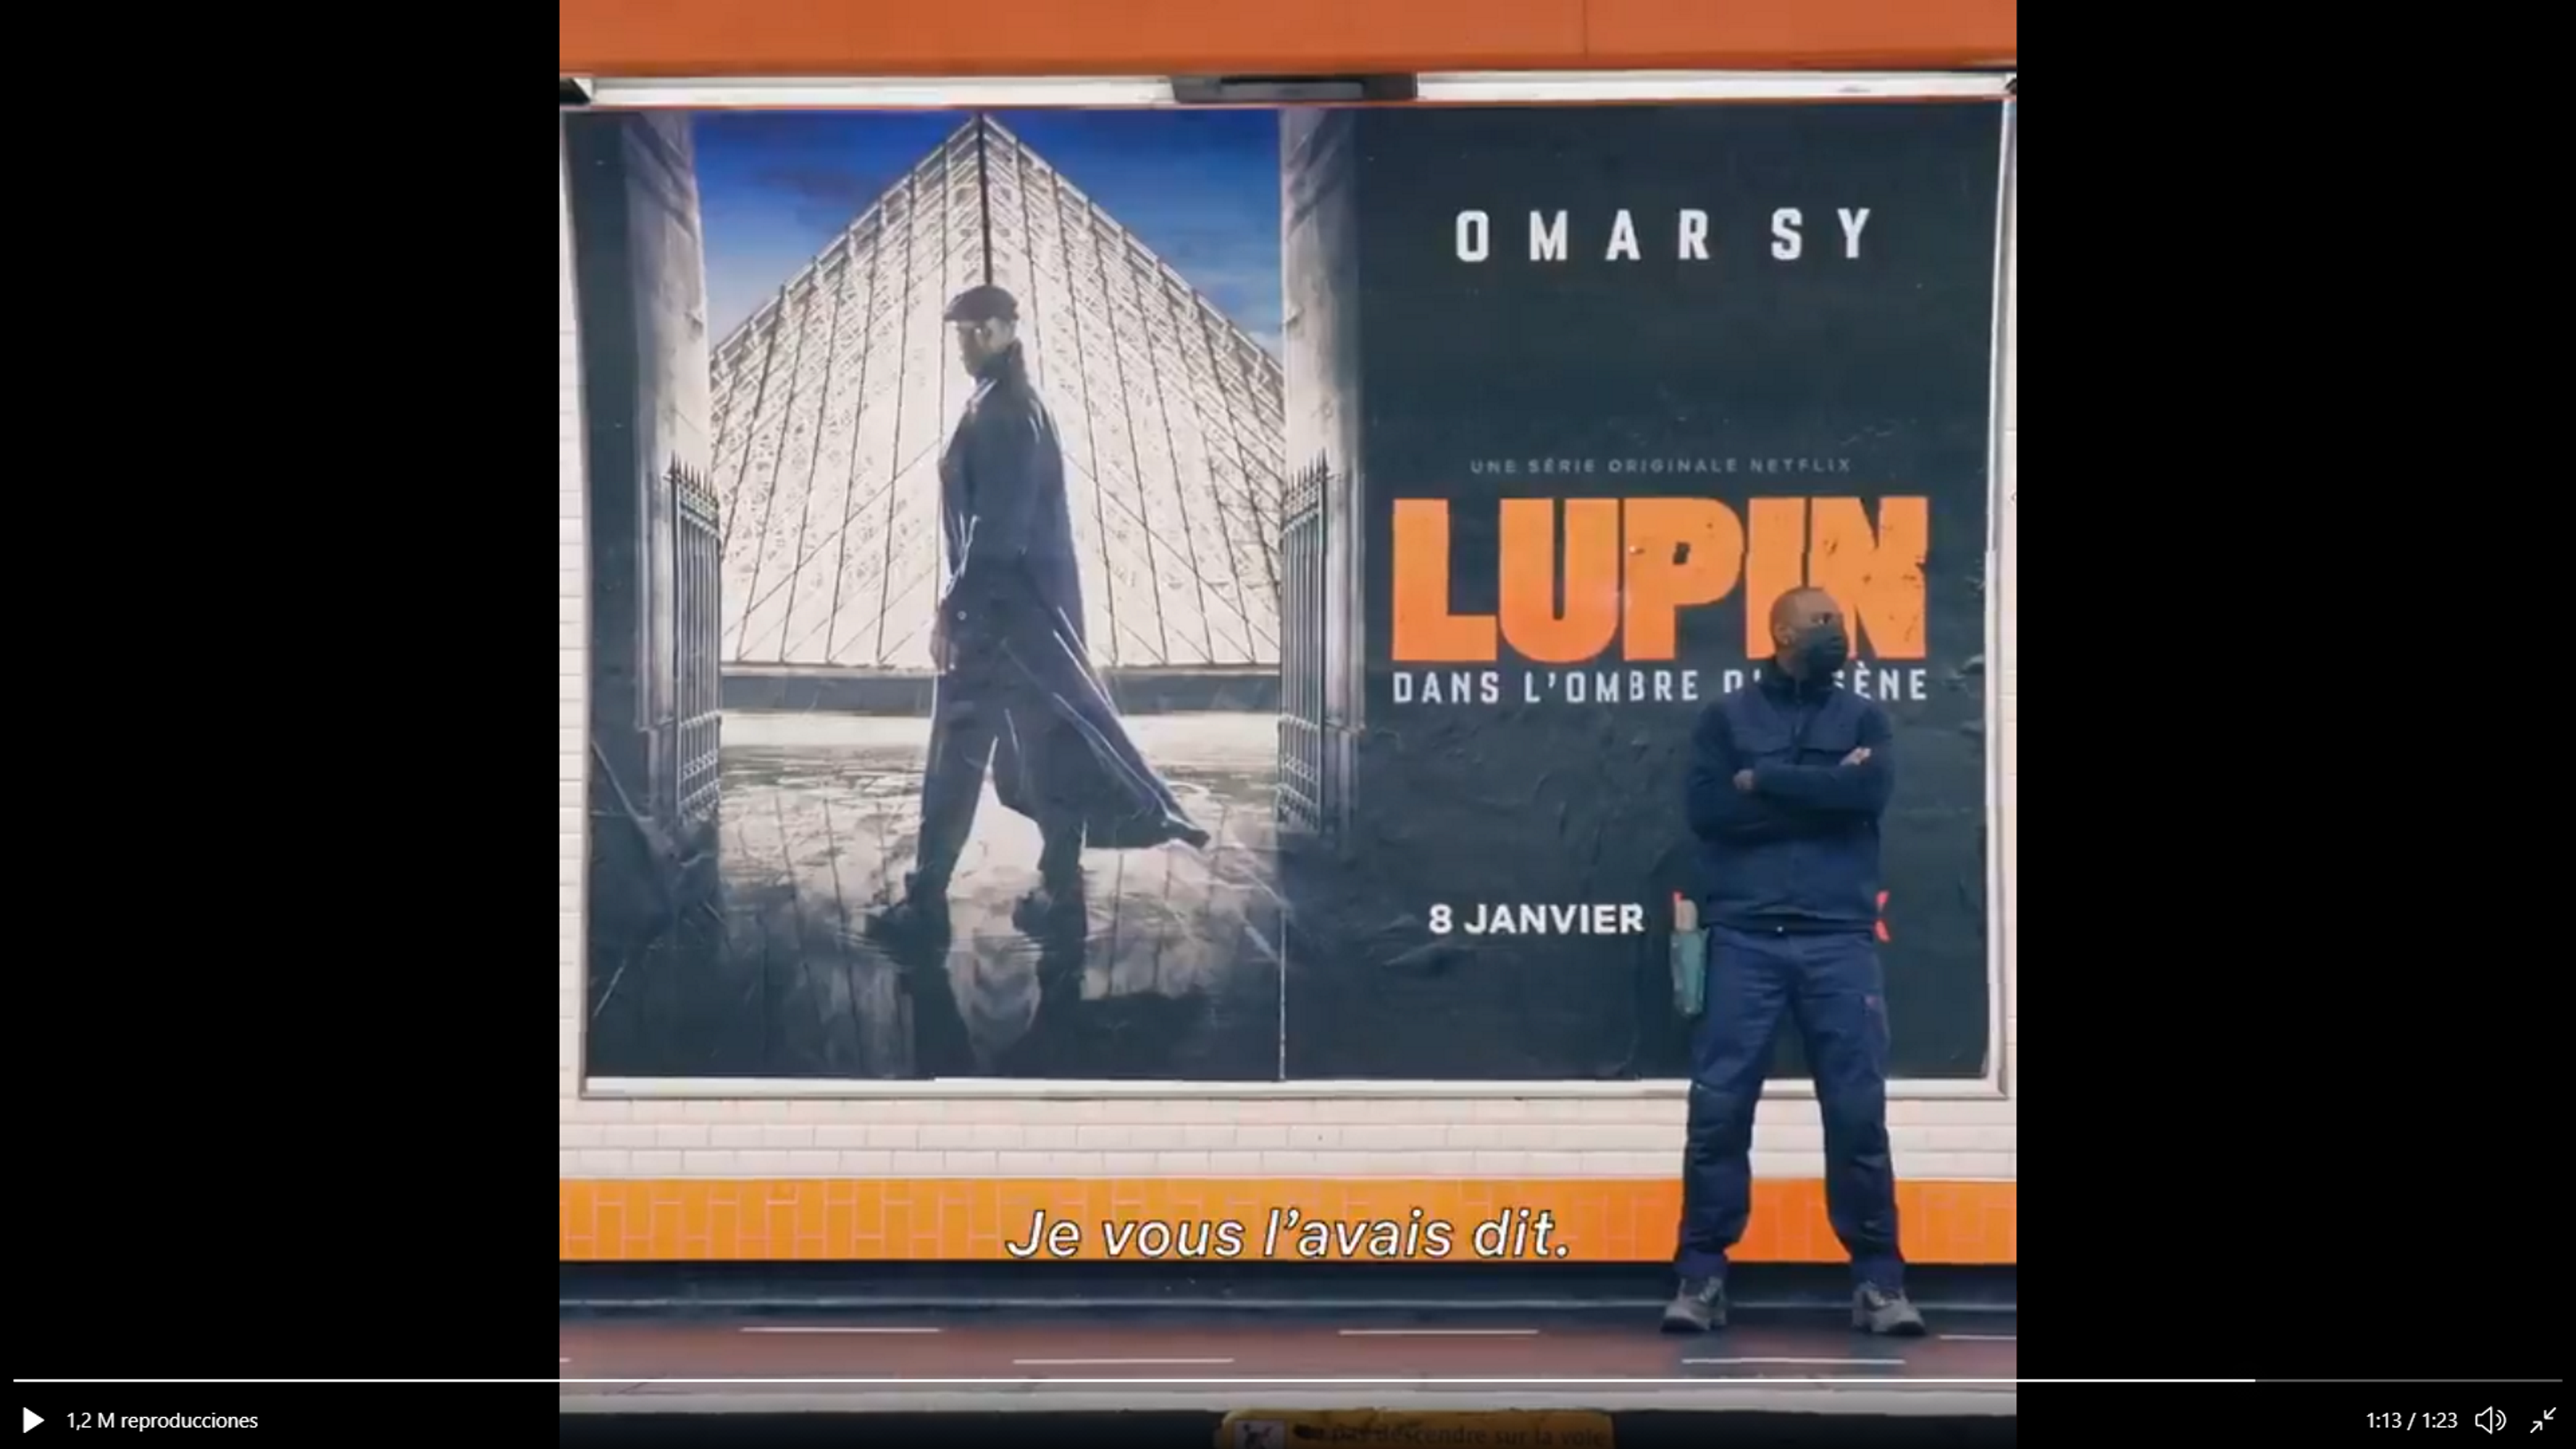 'Lupin' hace una broma y alborota el metro de París